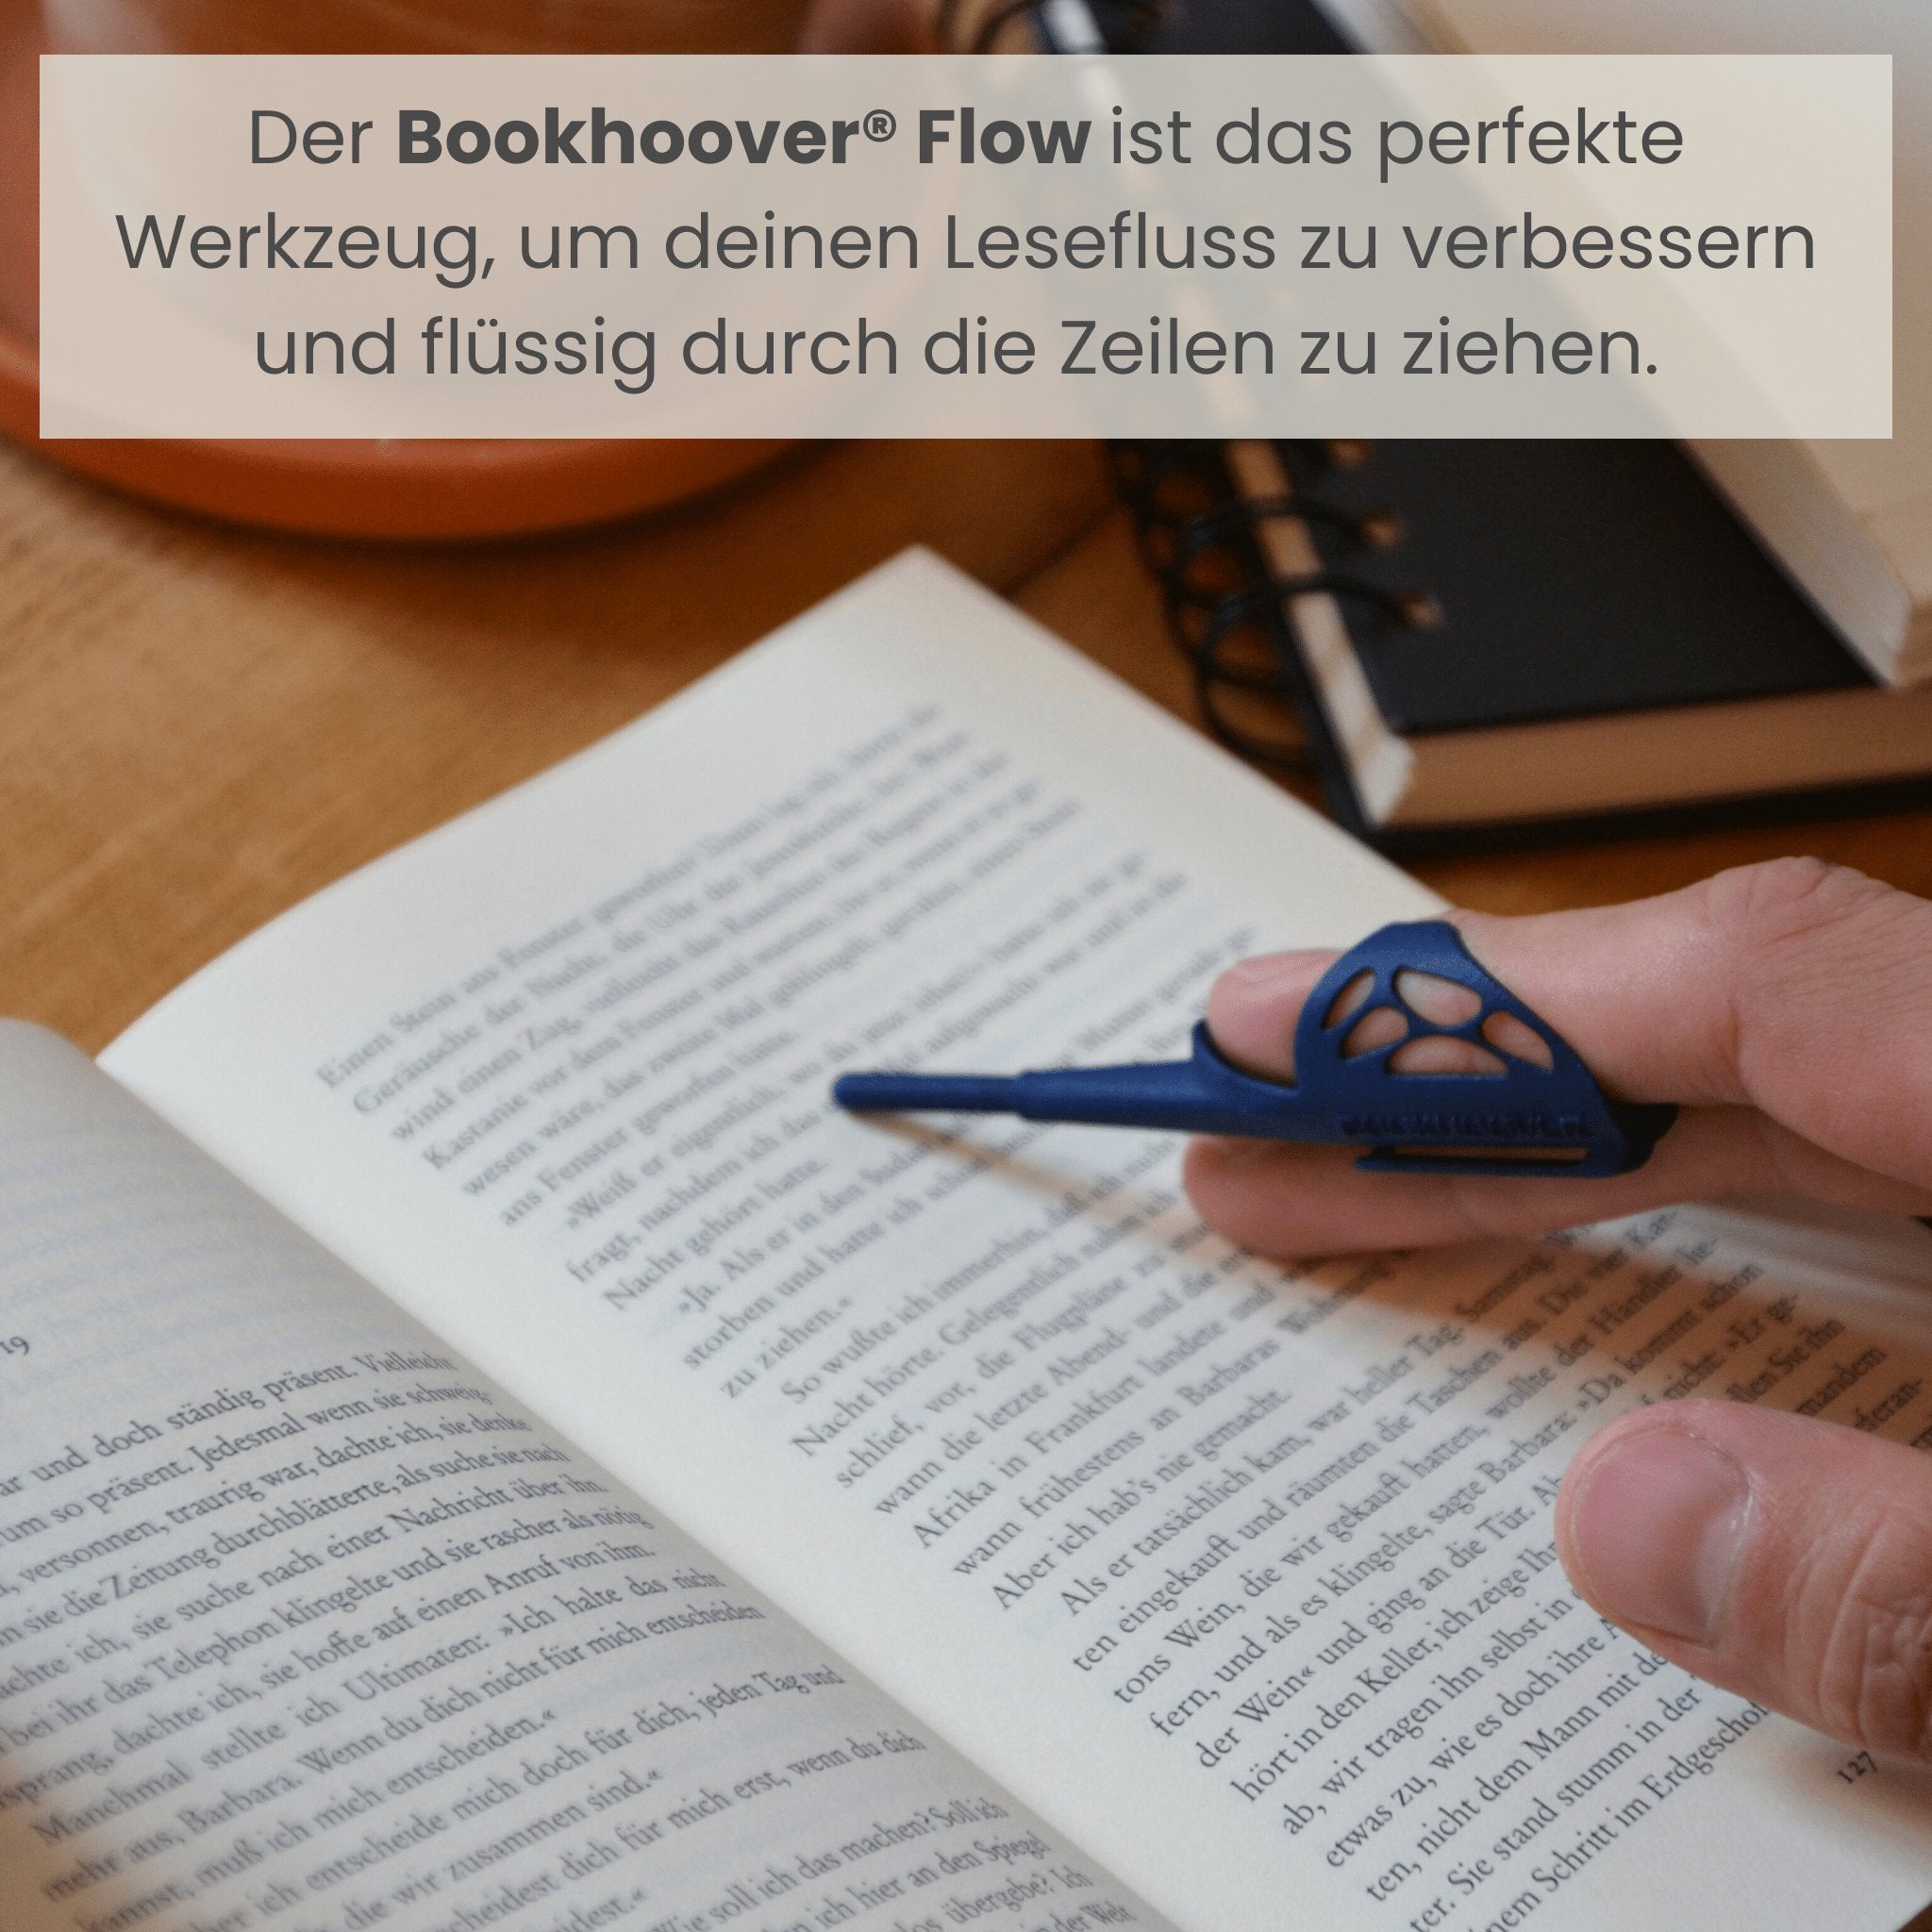 Das Doppel-Flow Bundle - Bookhoover®